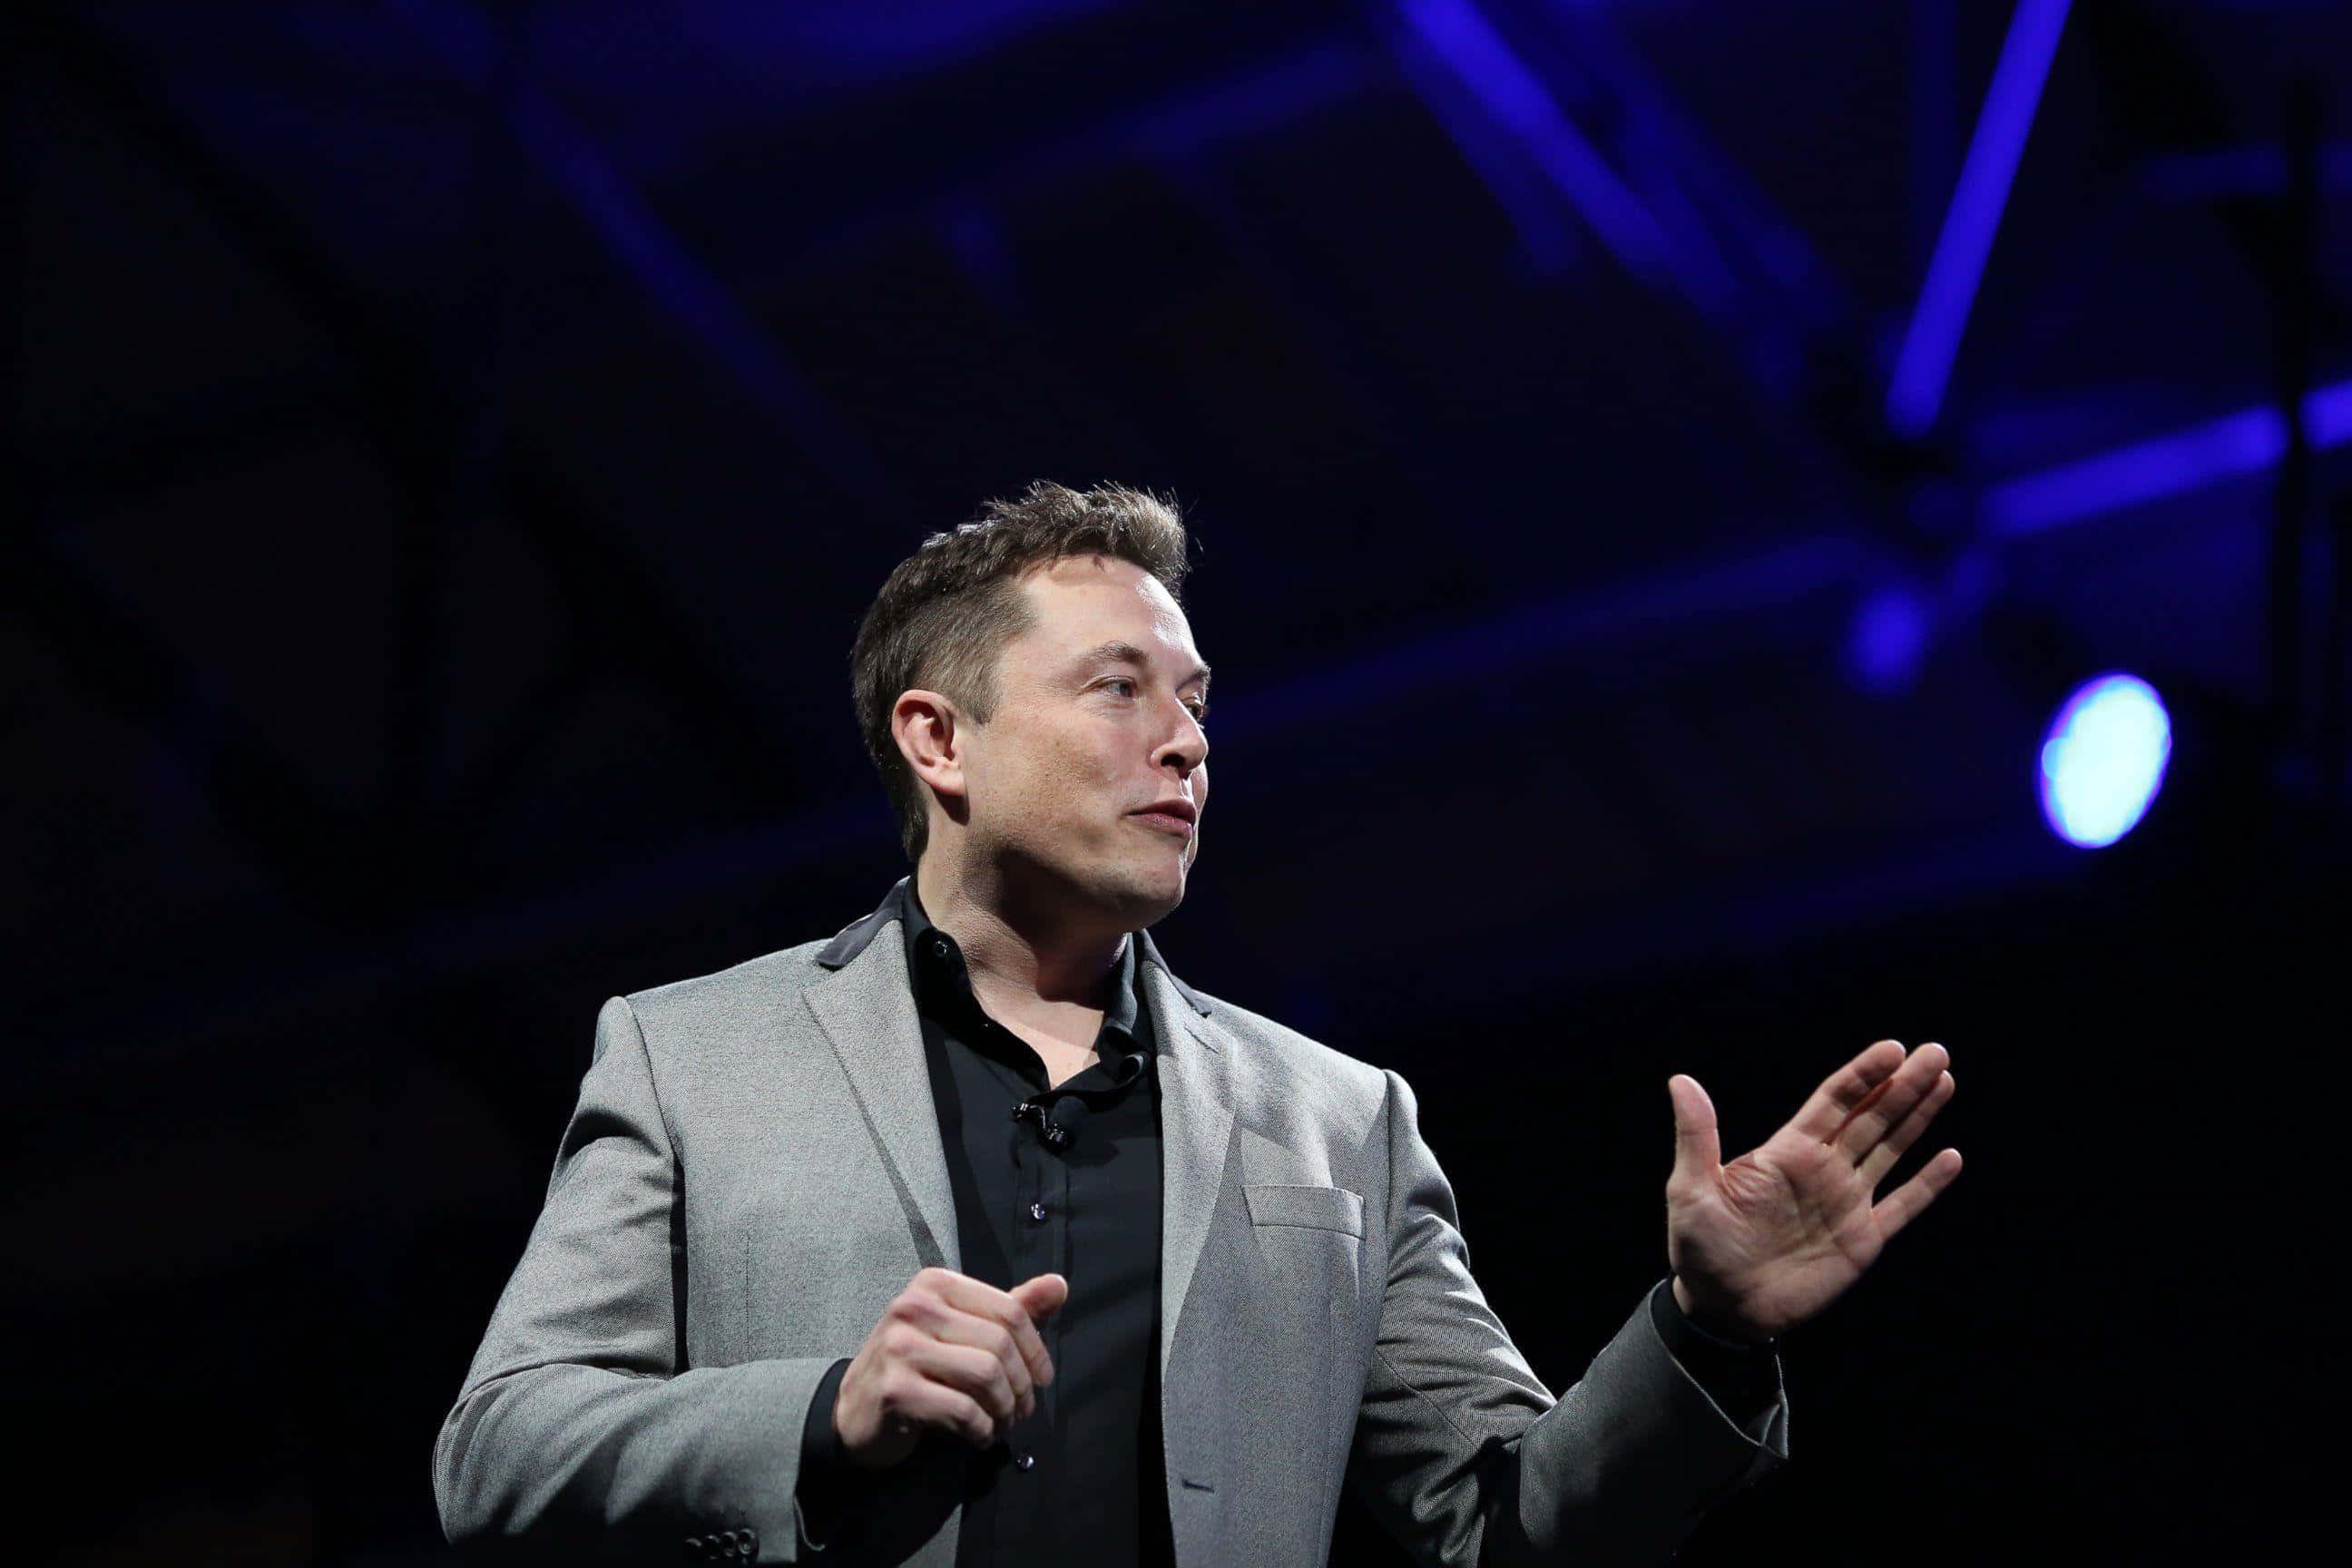 Einbahnbrechender Innovator - Elon Musk